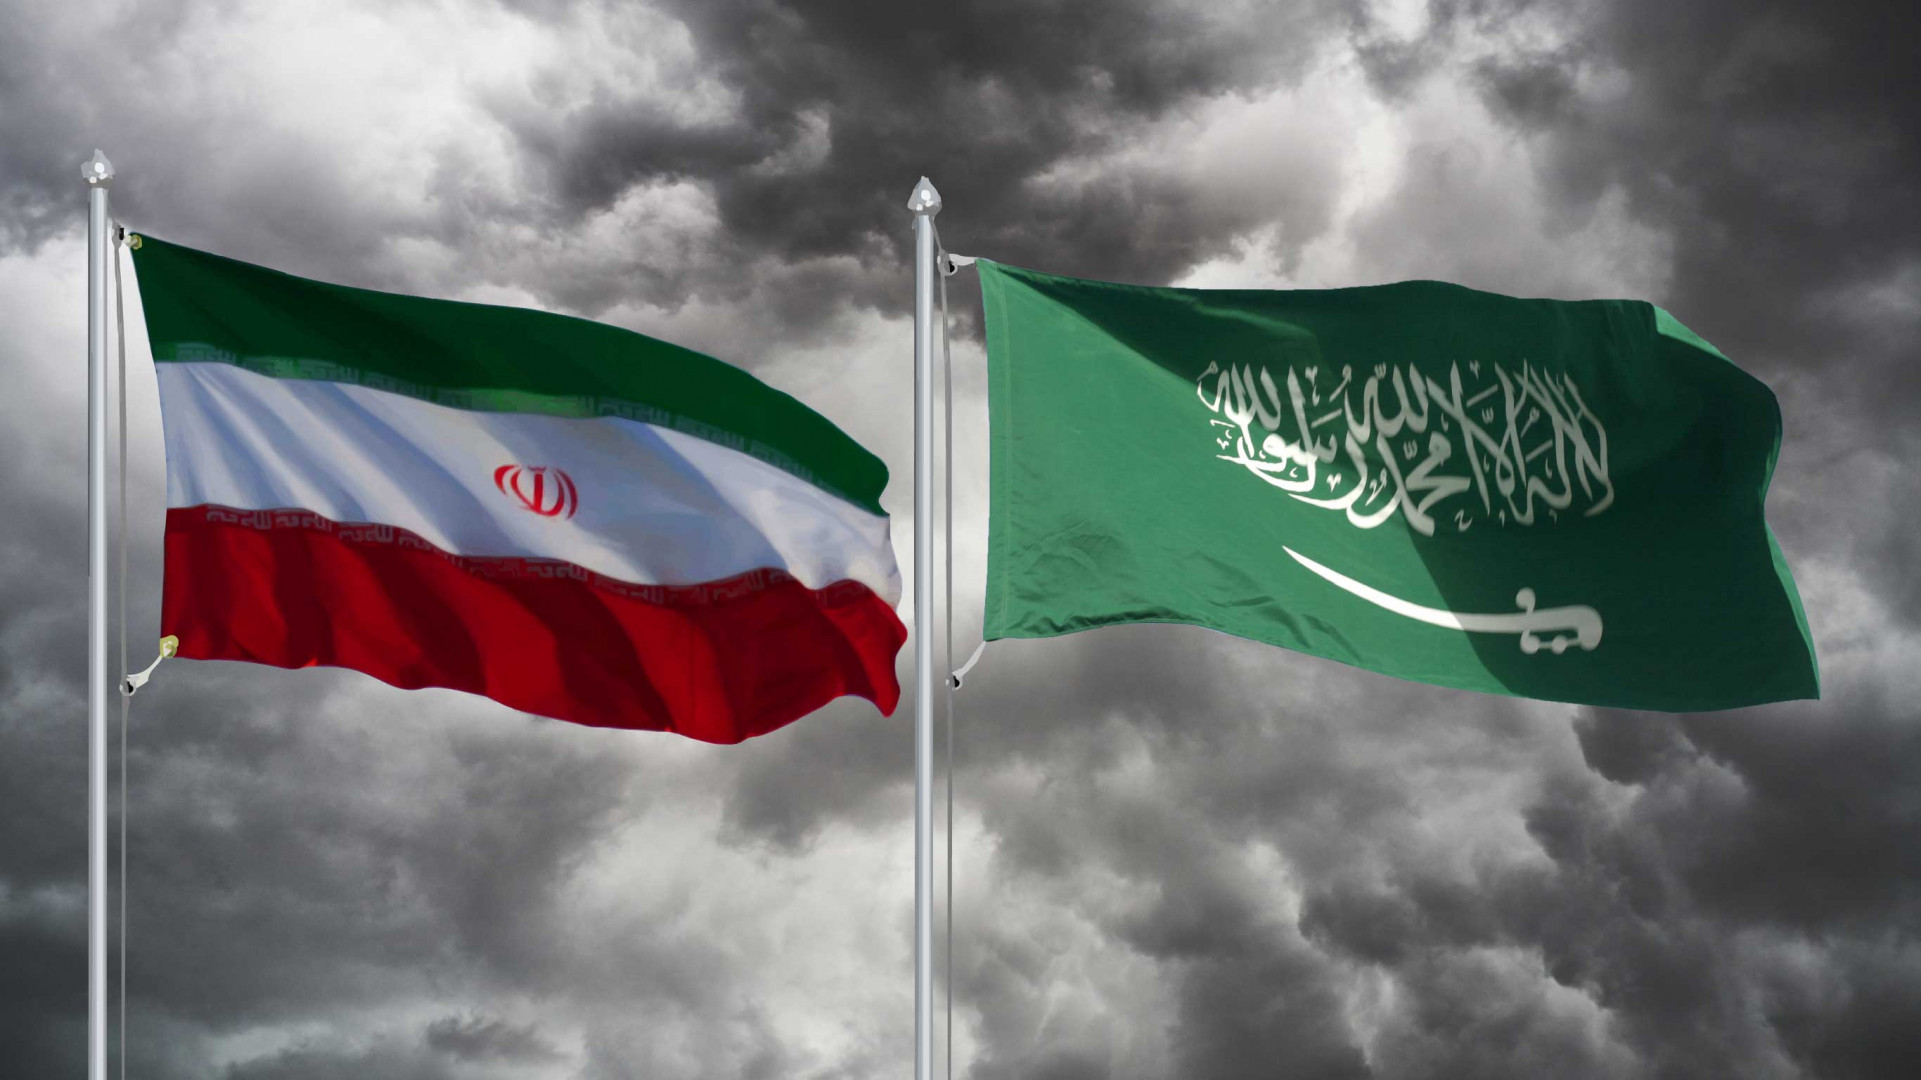 السعودية تصف محادثاتها مع إيران بـ"الودية" والمفاوضات بـ"بالاستكشافية"